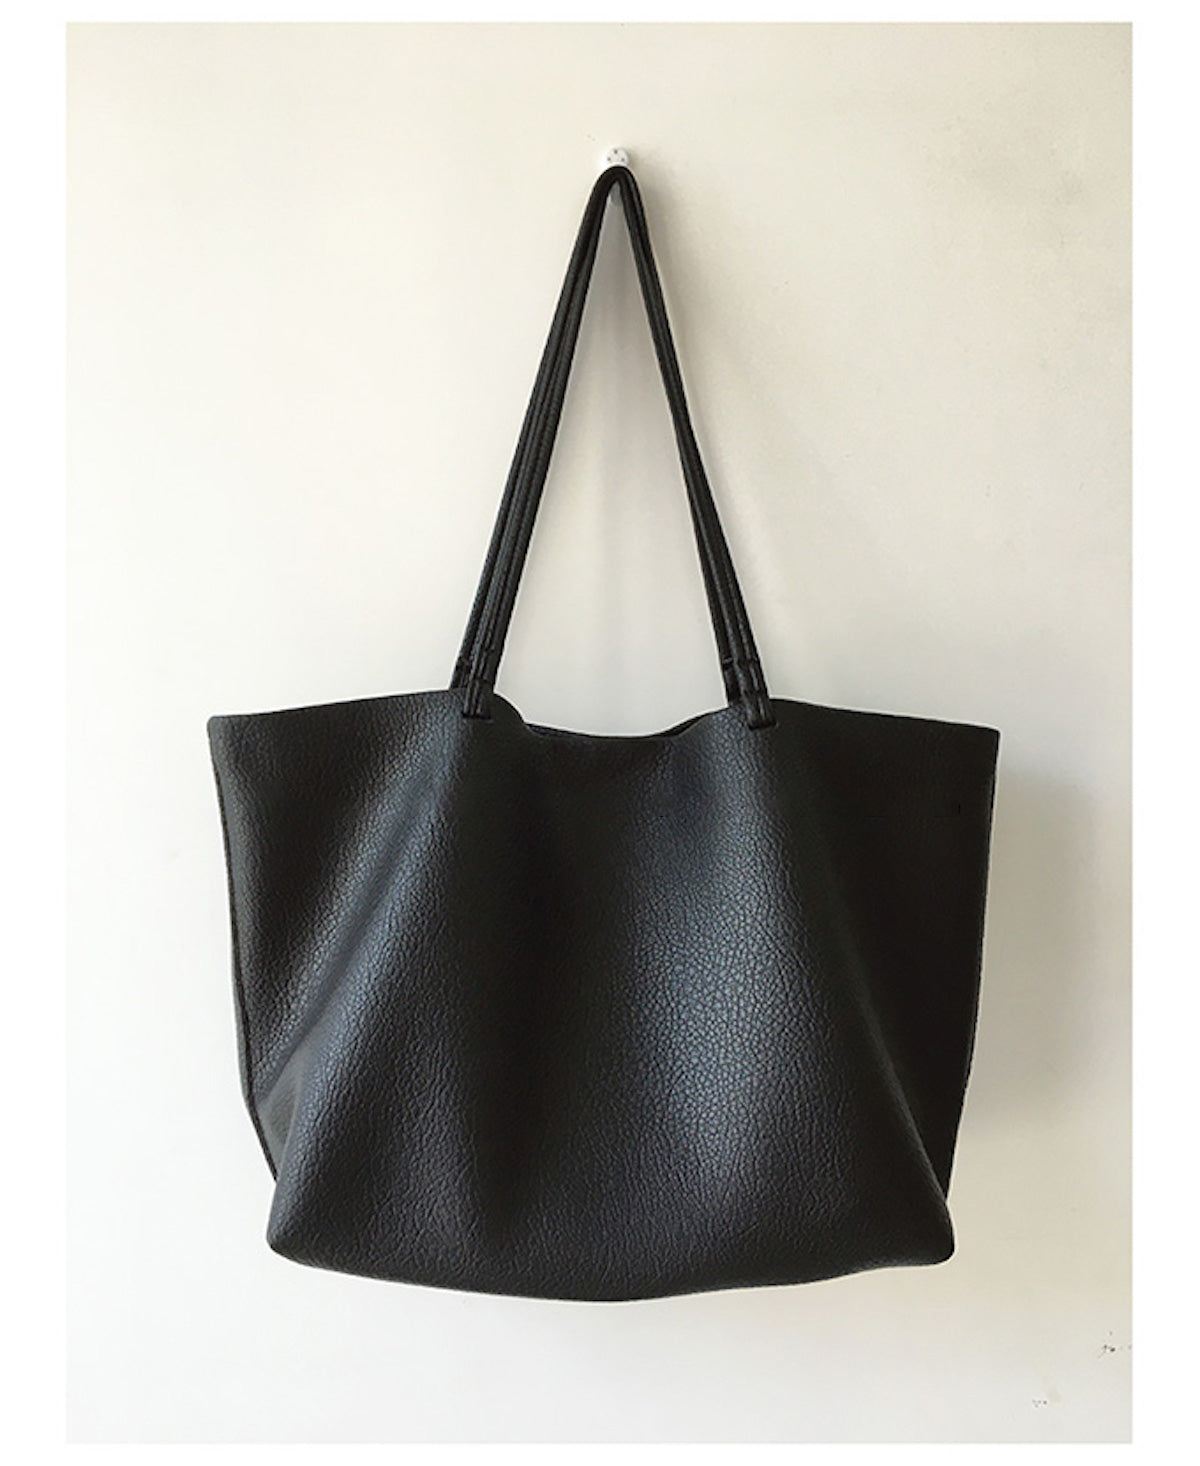 Cotton canvas beach bag - Black - Home All | H&M IN